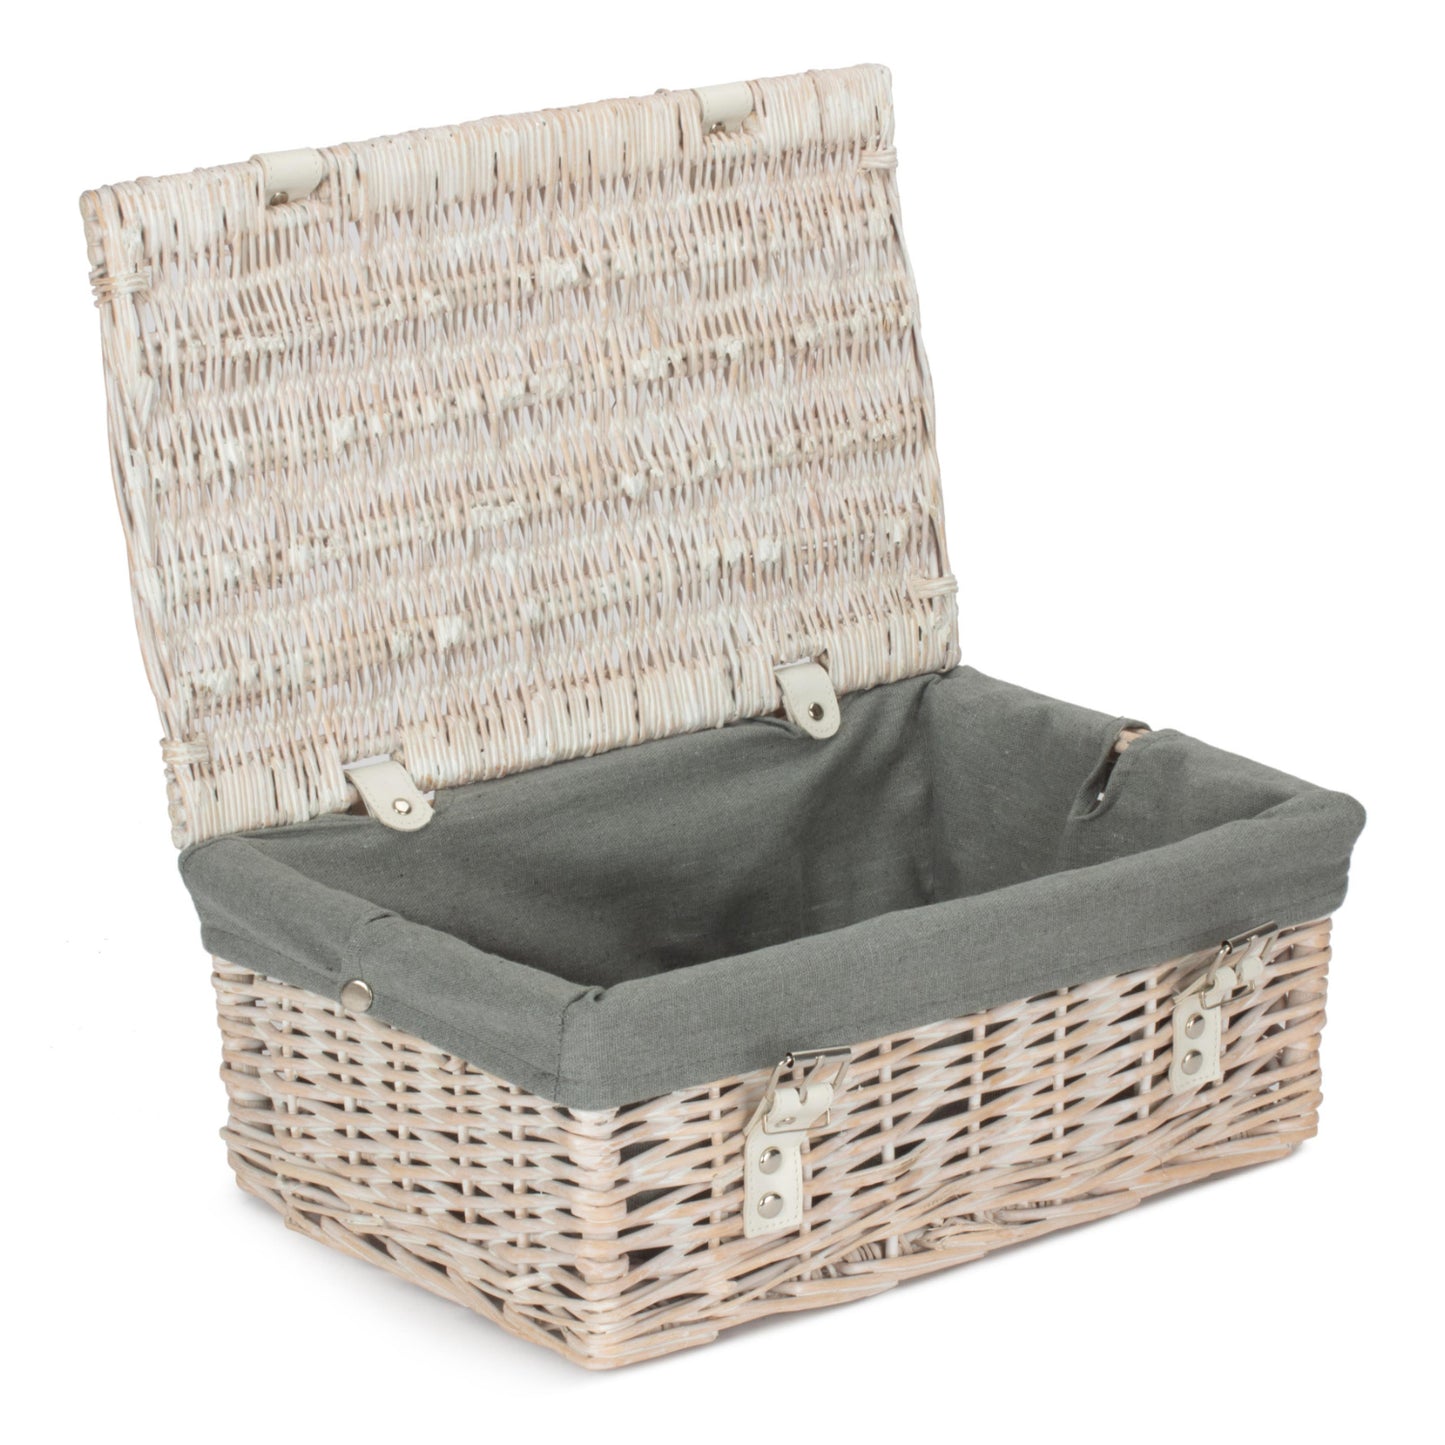 14 Inch Empty Wicker Hamper Basket - White Wash - Grey Sage Lining